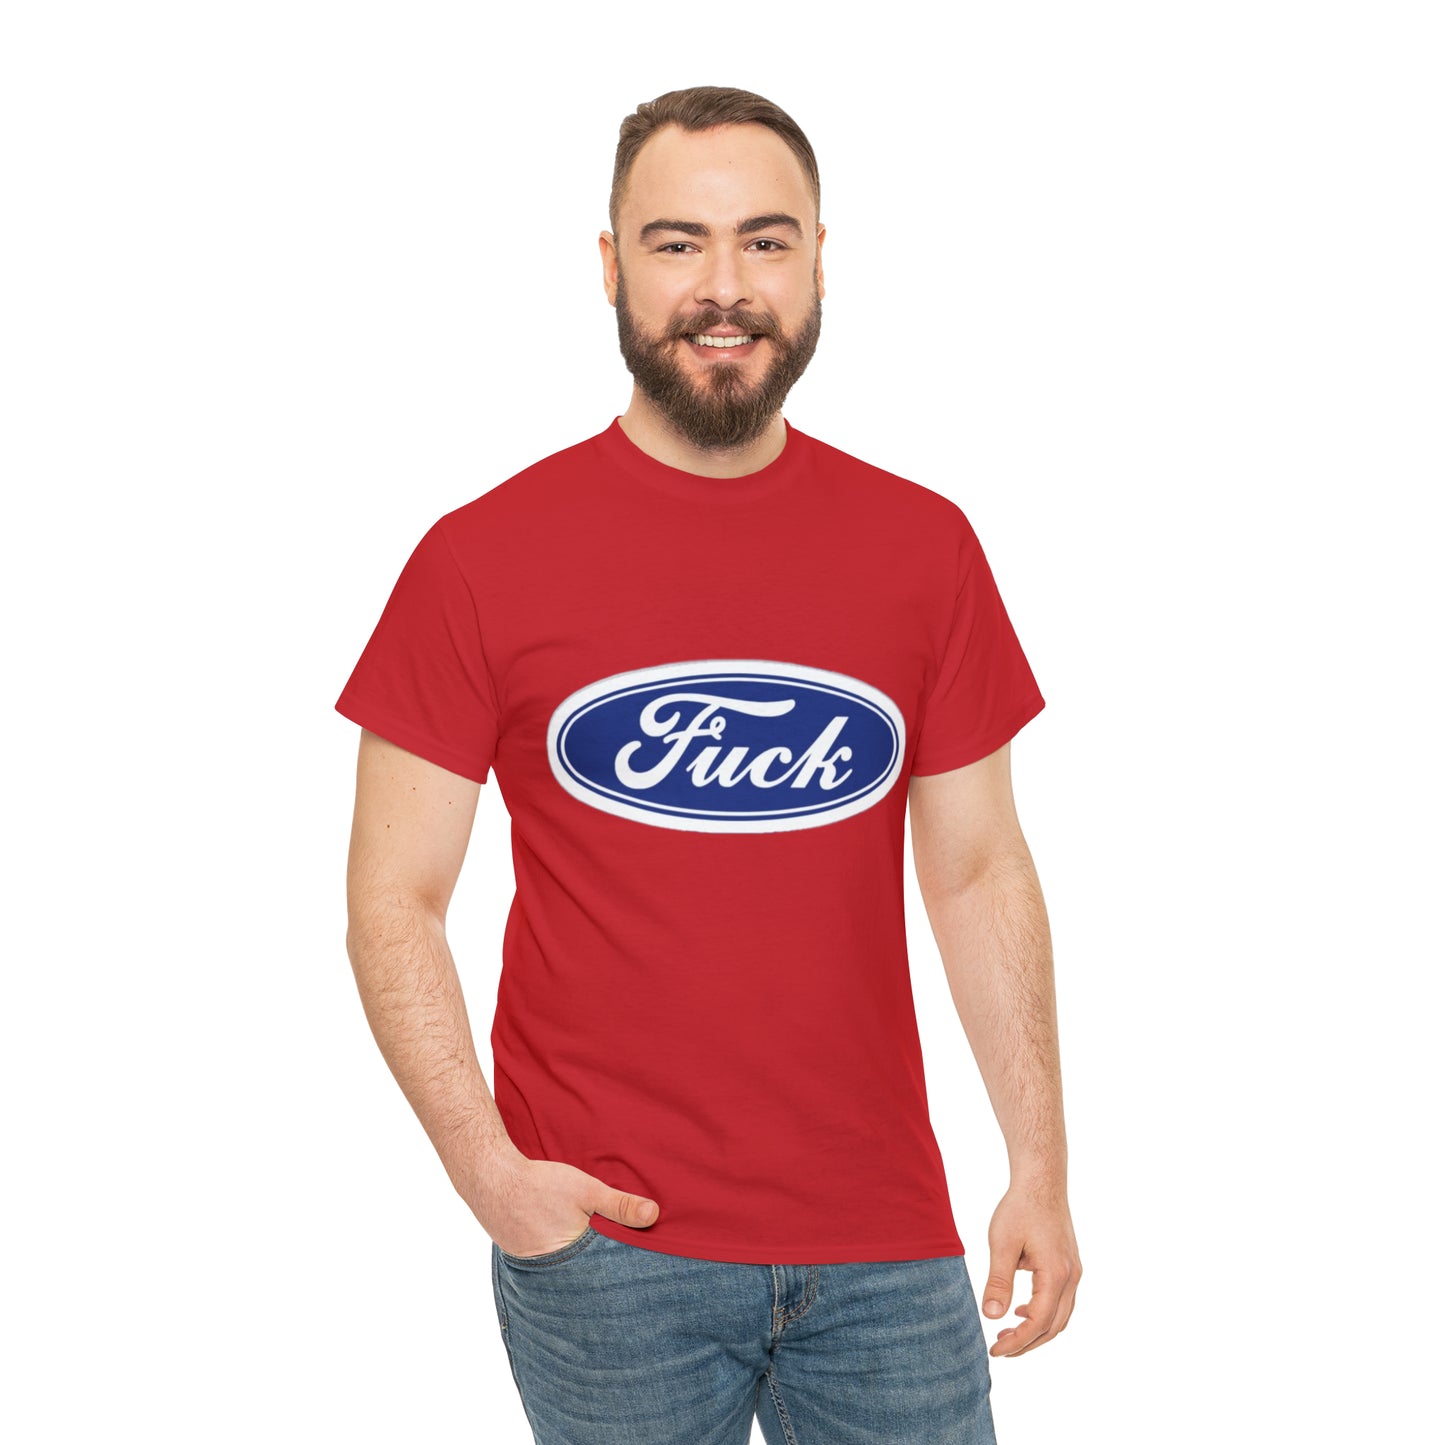 Fu*k T-Shirt